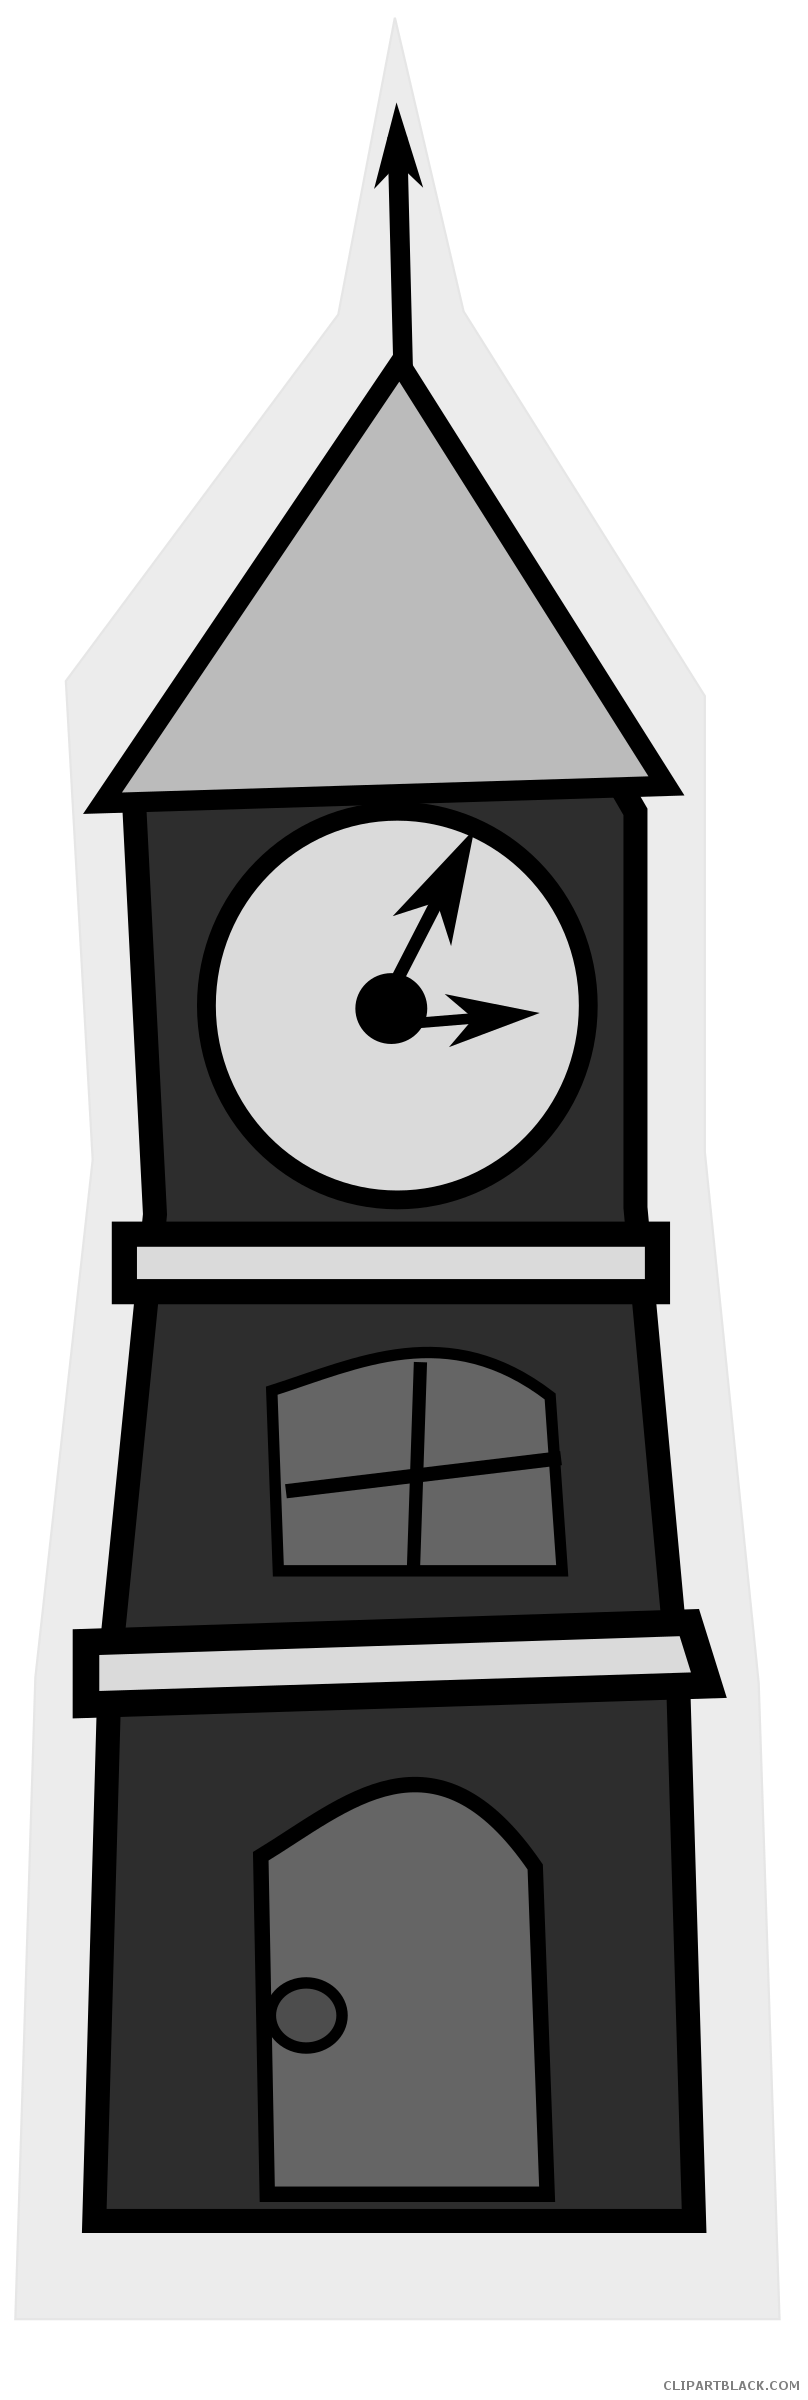 Clock clipartblack com tools. Tower clipart clocktower